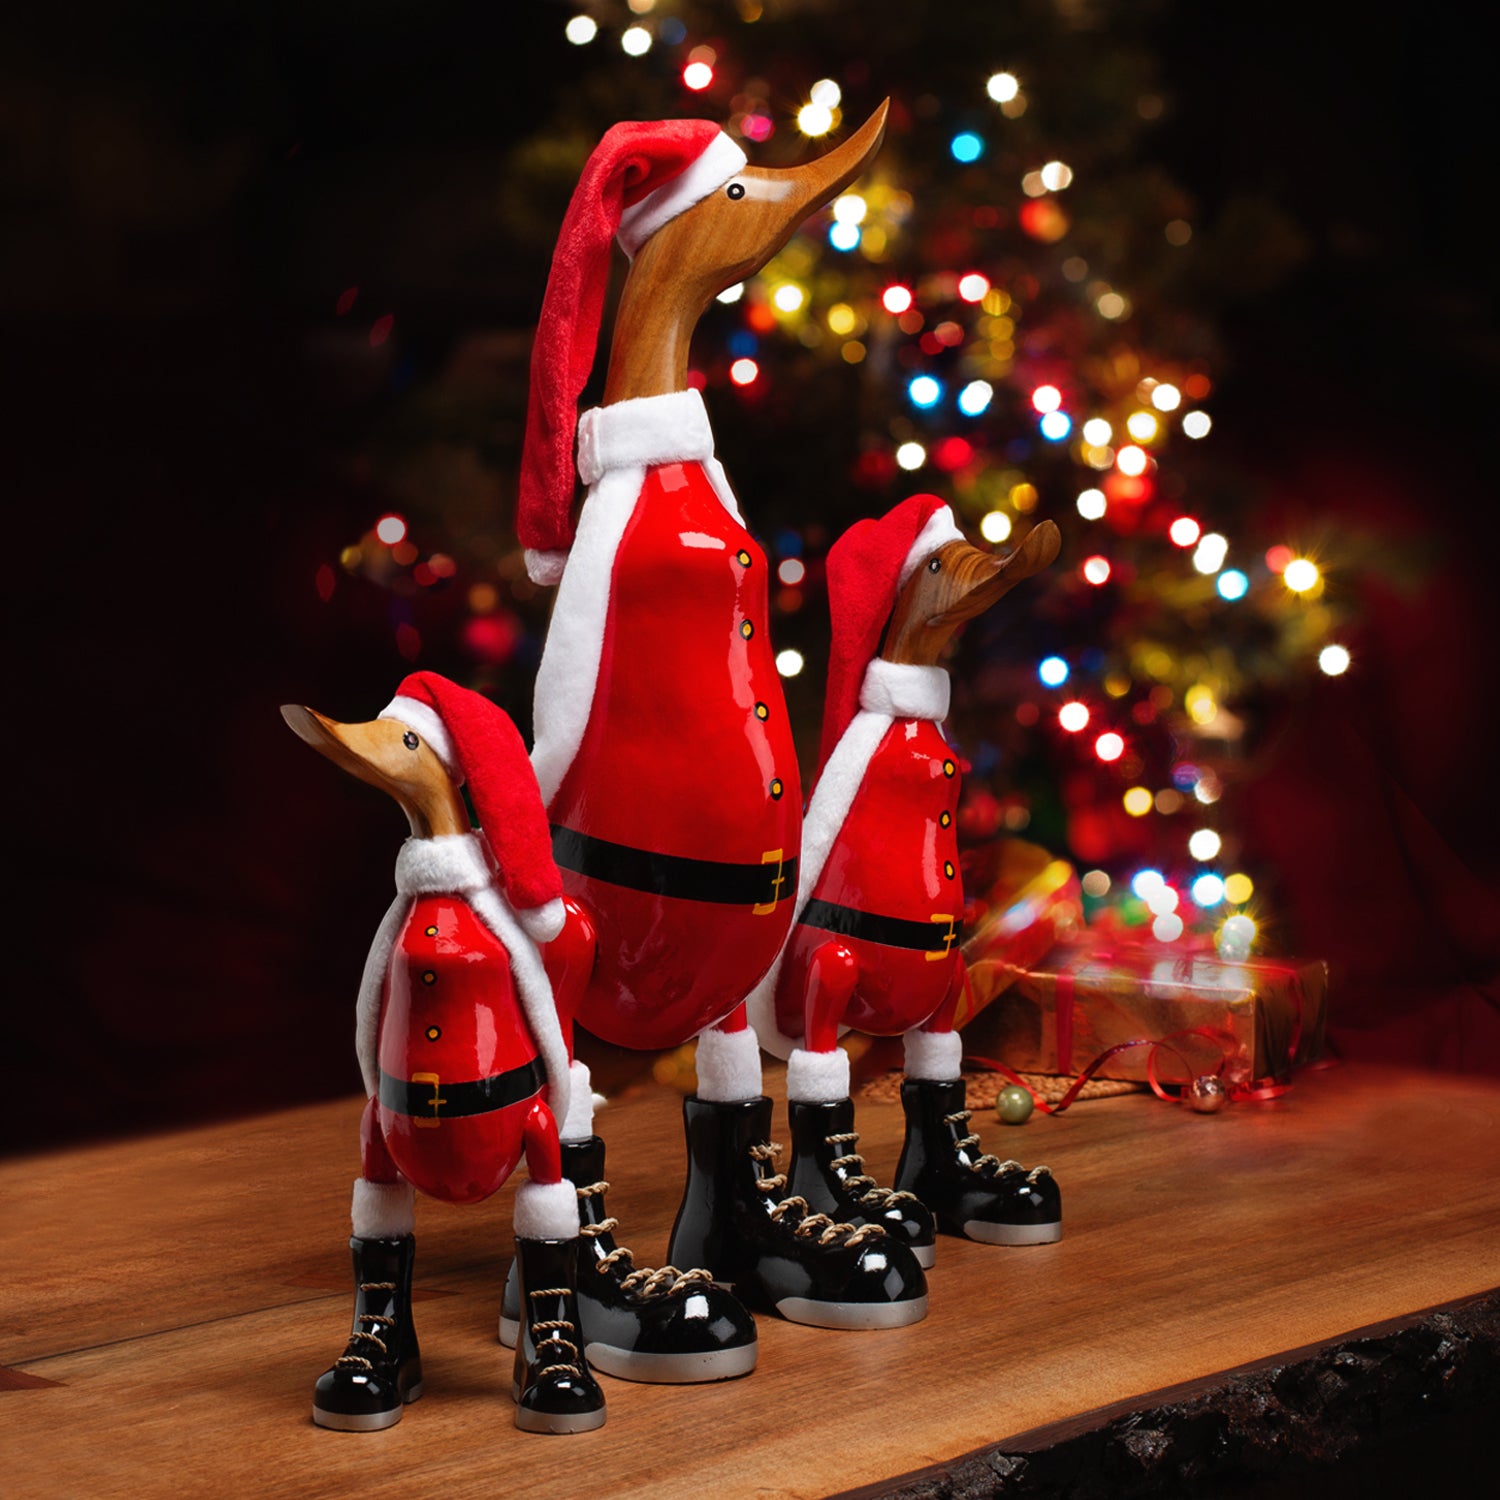 Ente "Santa" (Weihnachtsmann) aus Holz Geschenk Deko